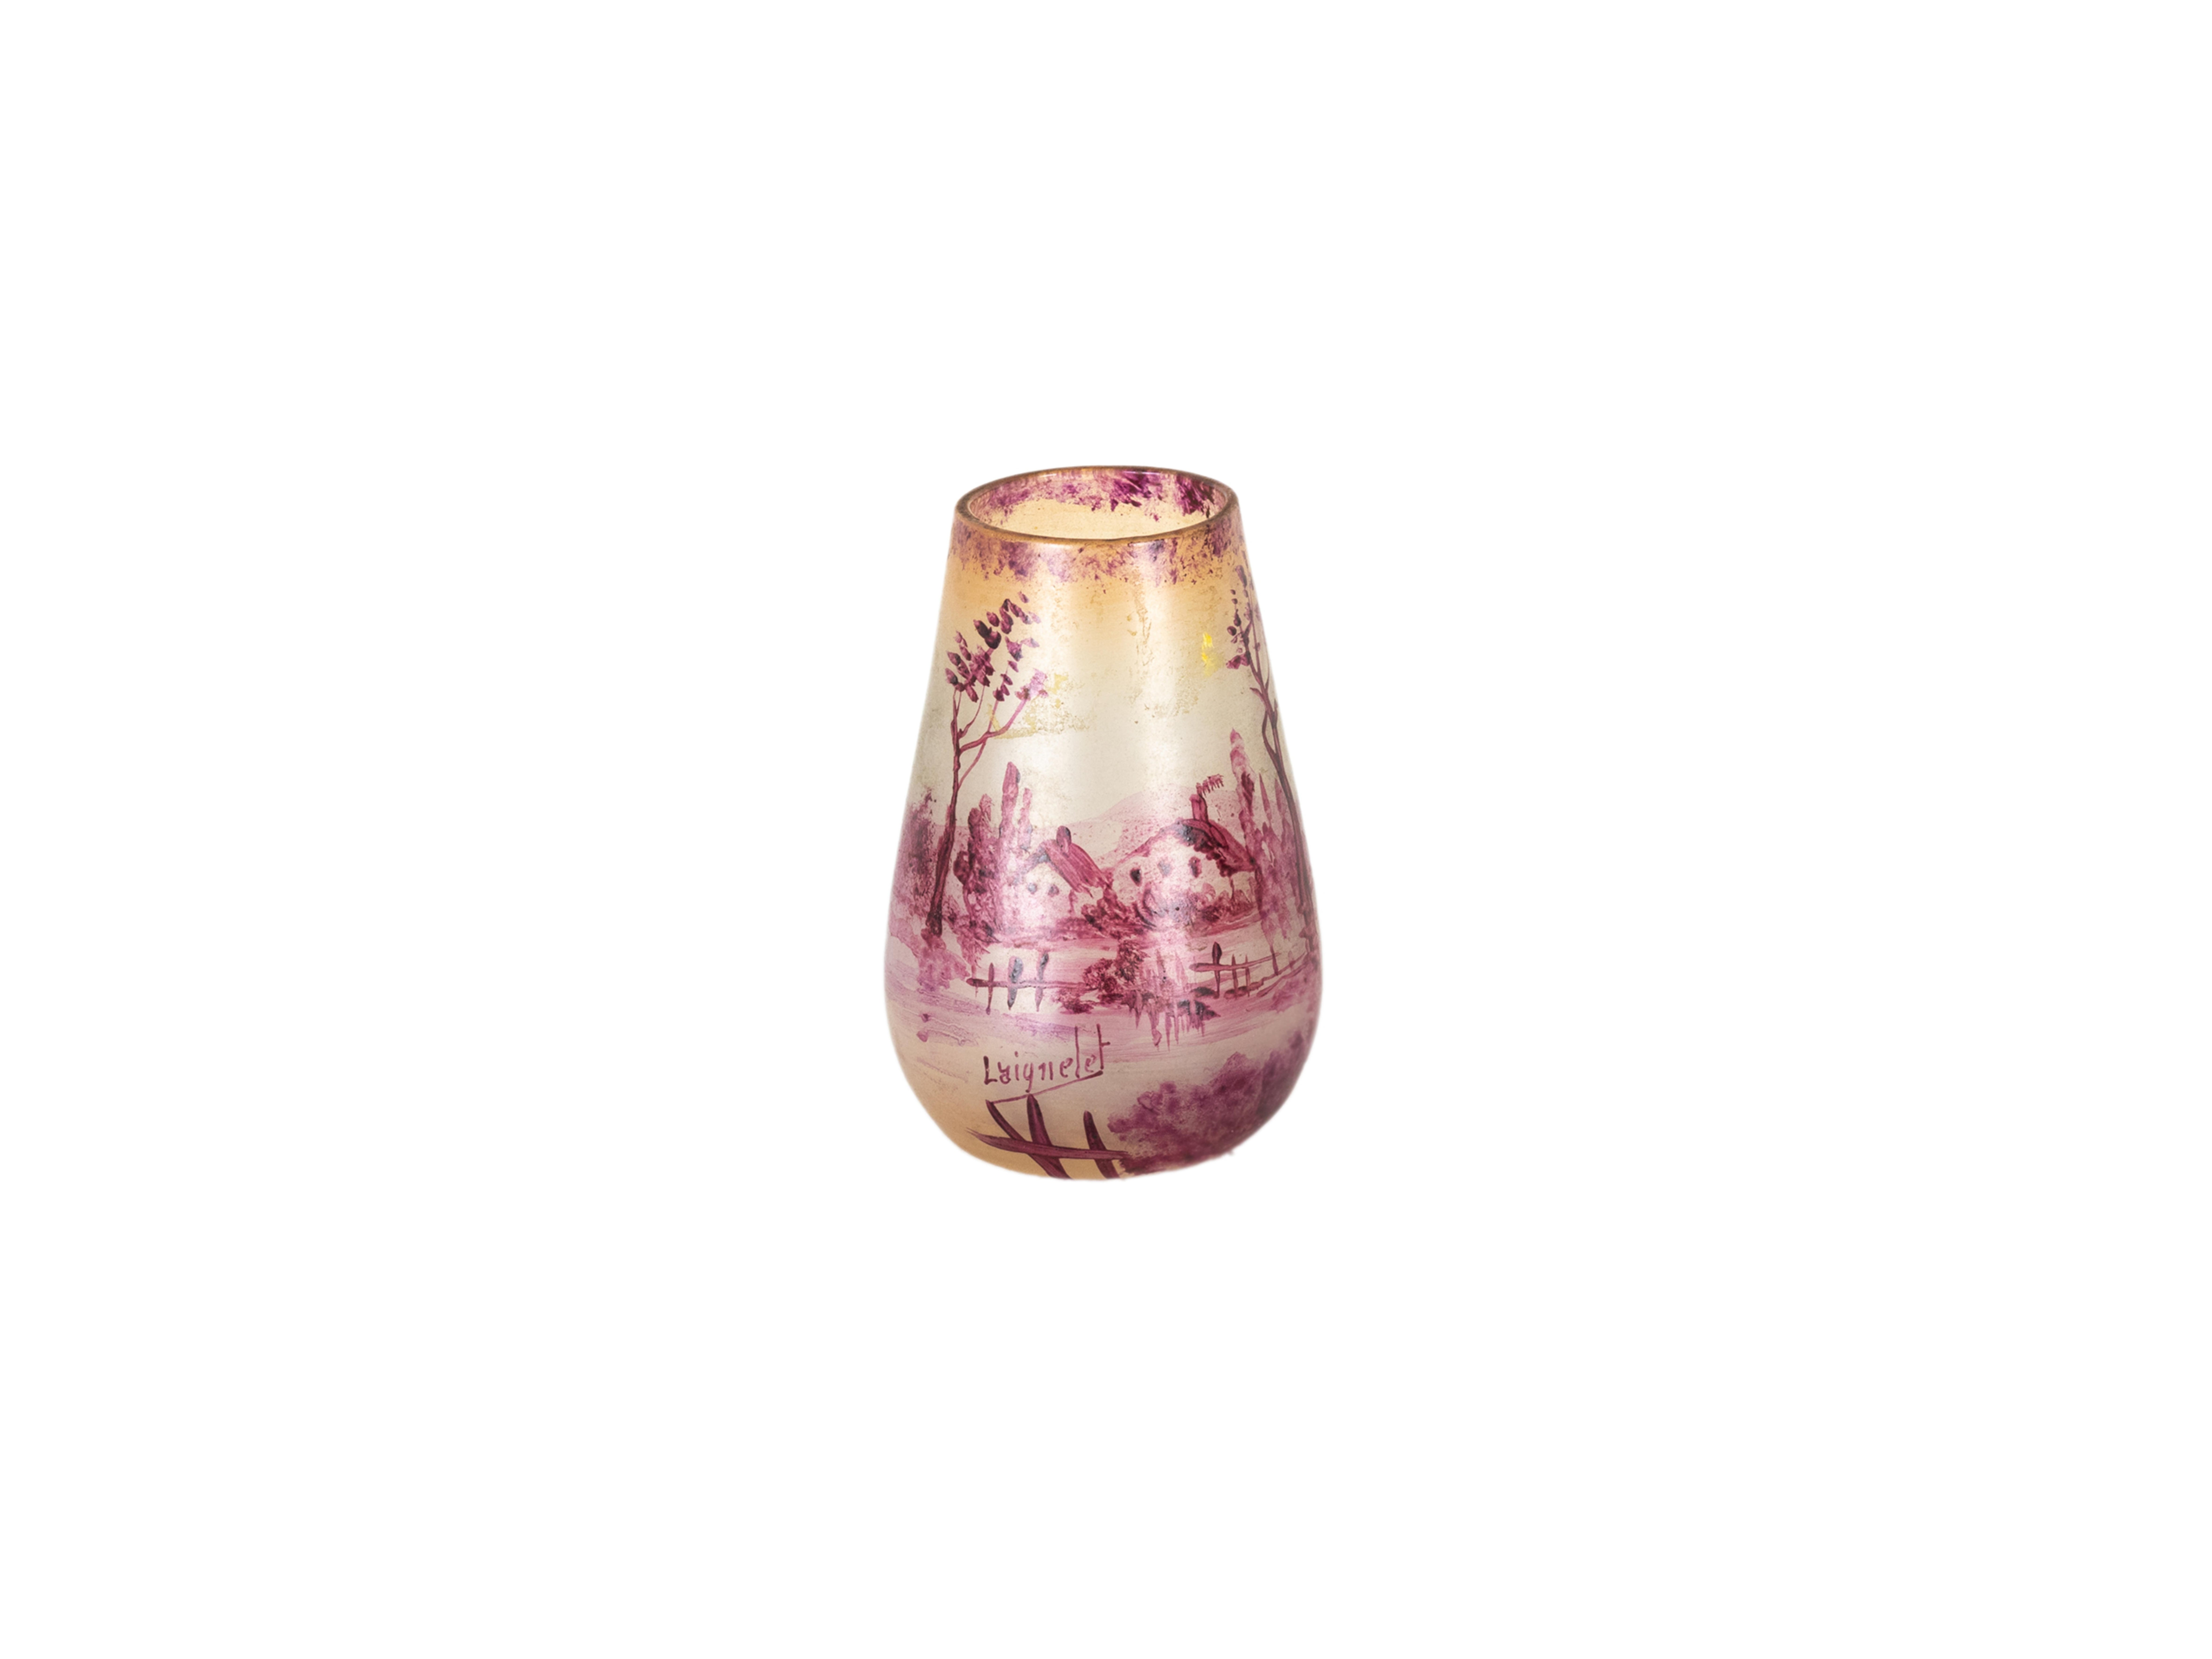 Cold-Painted Art Nouveau Laignelet Pink Glass Vase, 20th Century For Sale